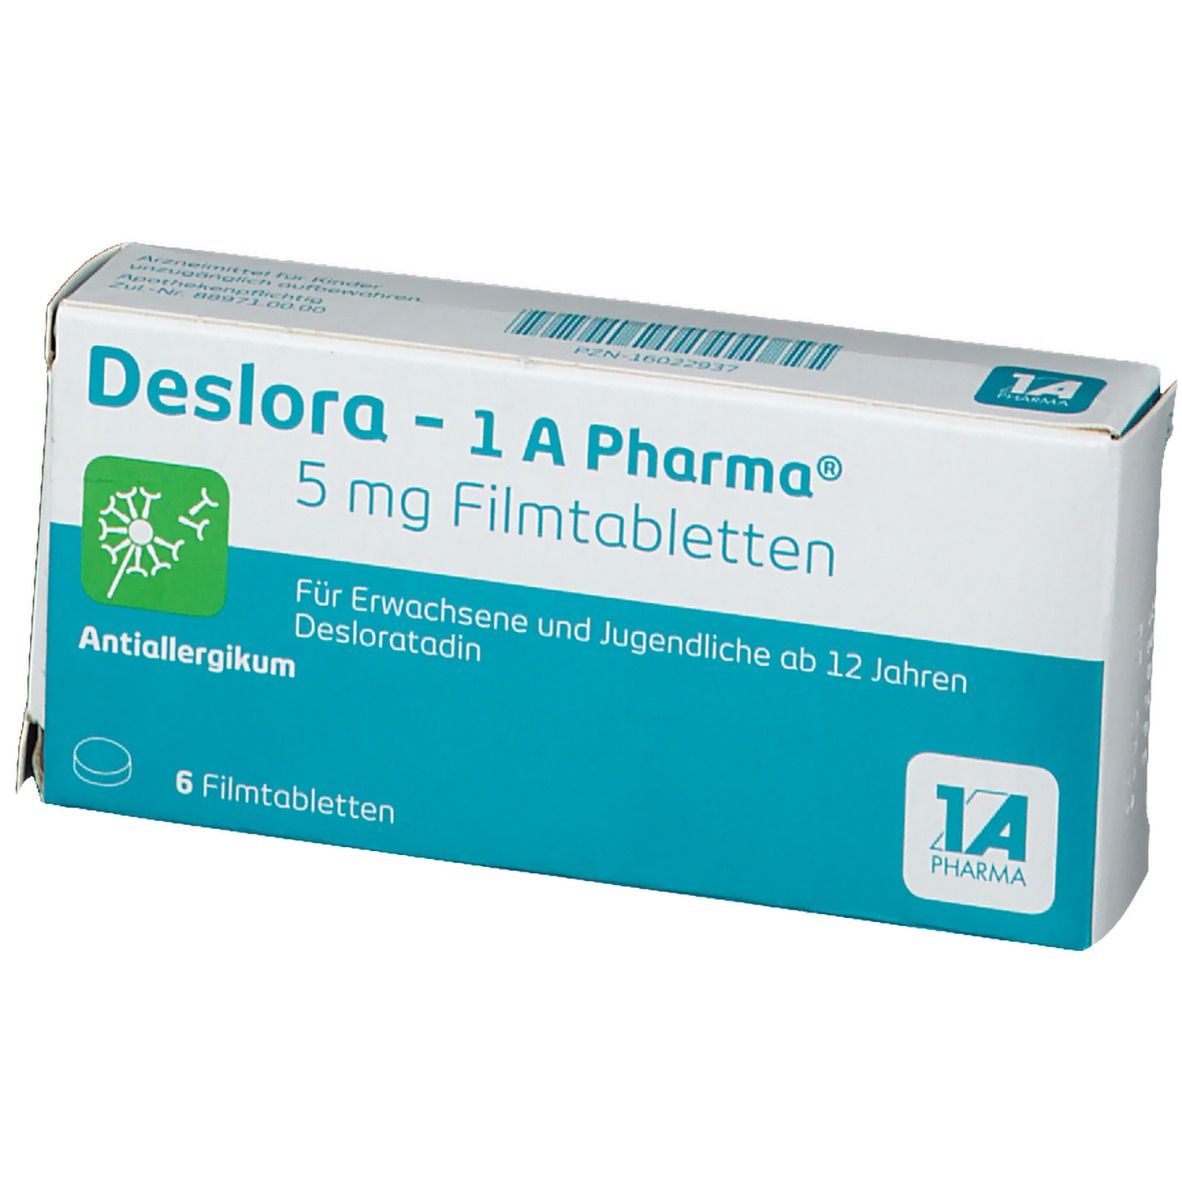 Deslora - 1 A Pharma®